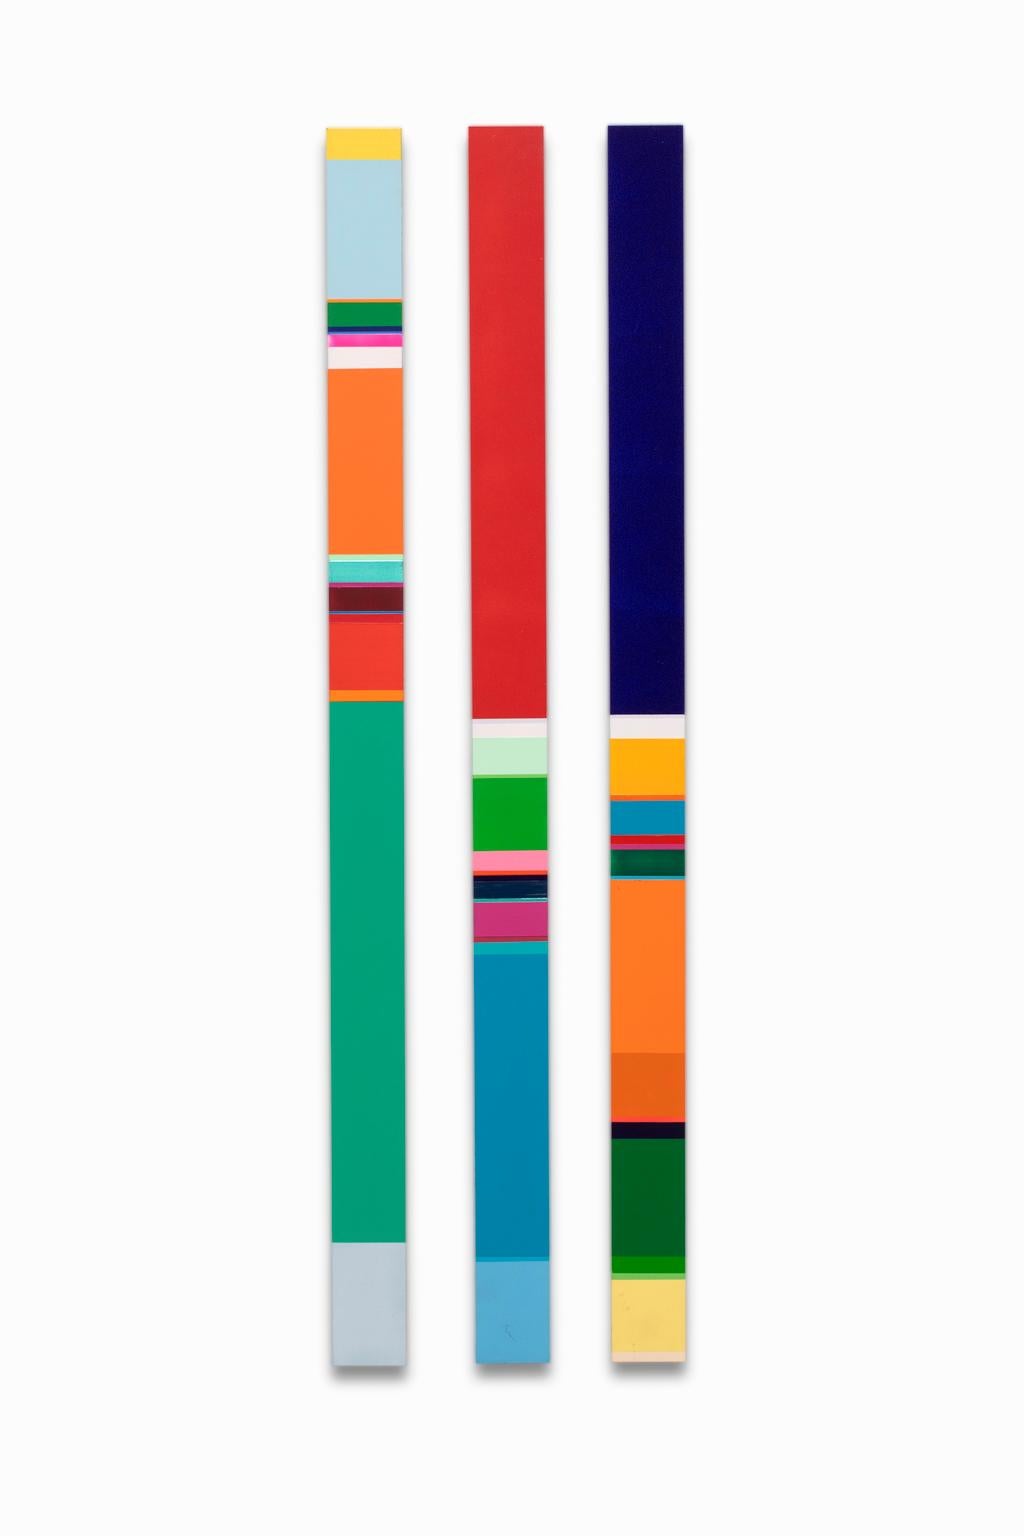 VENTE UNE SEMAINE SEULEMENT

"Untitled" de Nicholas Bodde représente des couches de couleurs vibrantes sur d'étroites bandes d'aluminium. Ces pièces sont interchangeables et peuvent être suspendues de différentes manières. Chaque œuvre est signée au